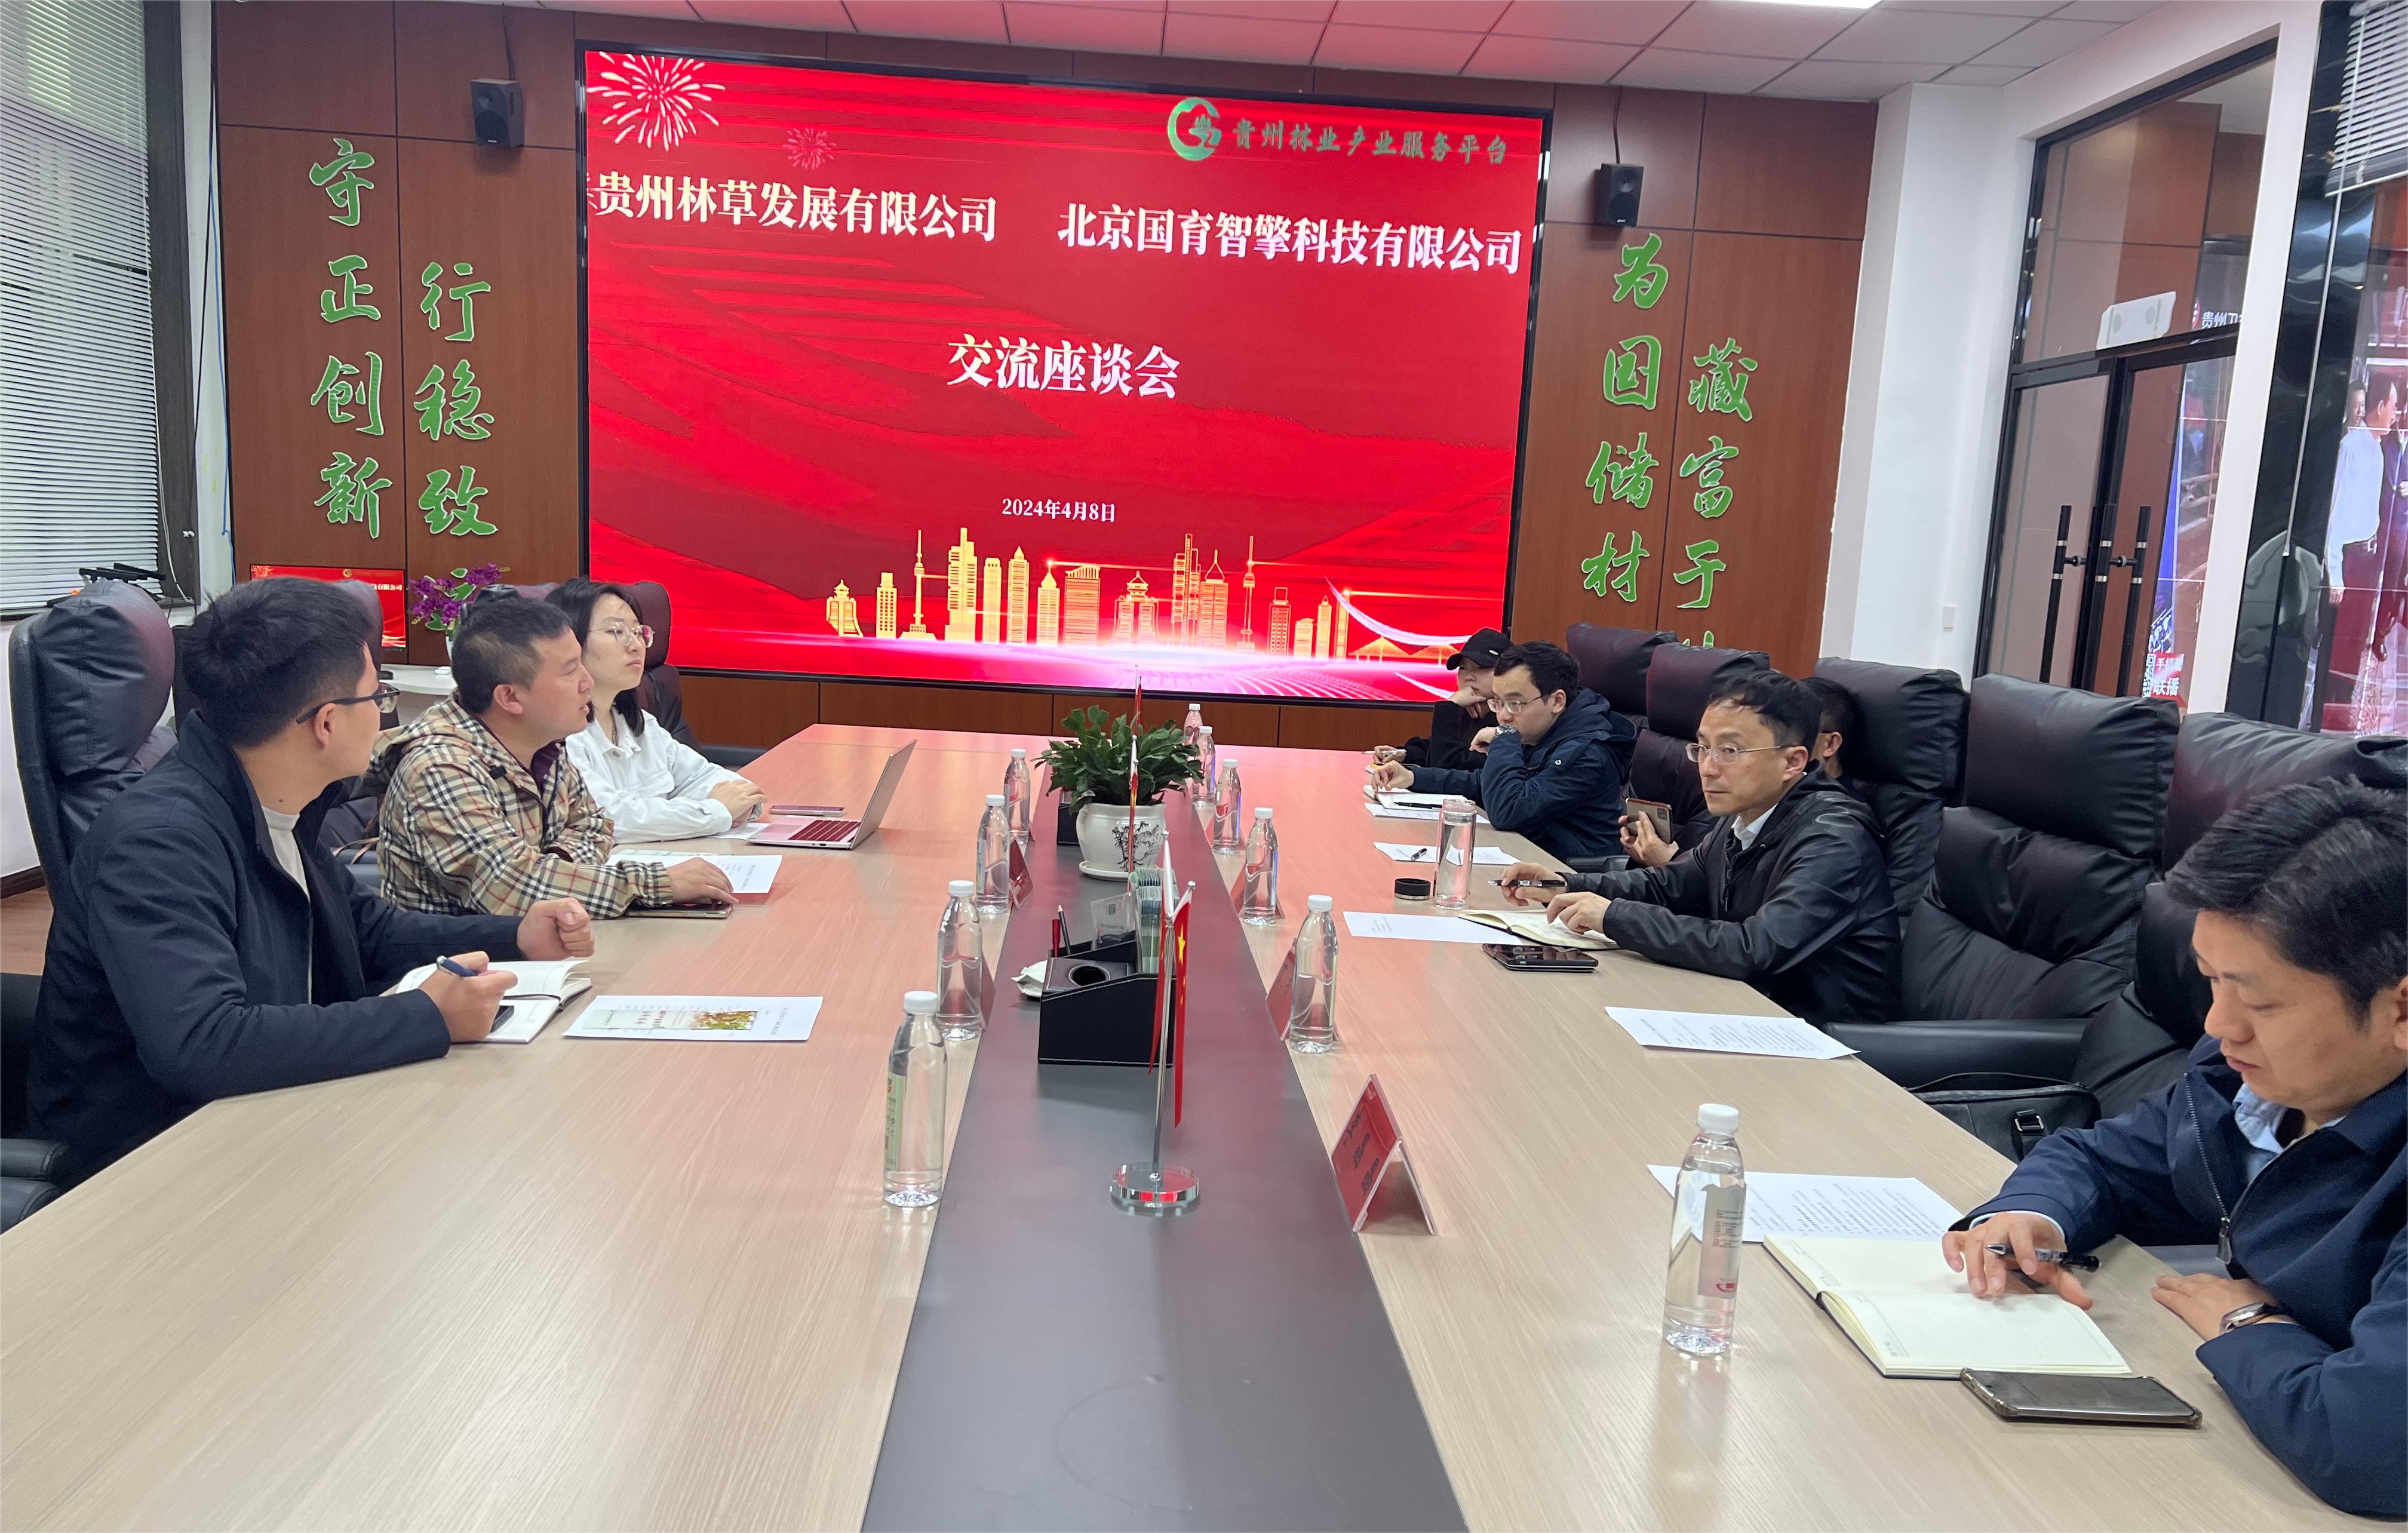 北京国育智擎科技有限公司与贵州林草发展有限公司达成合作共识